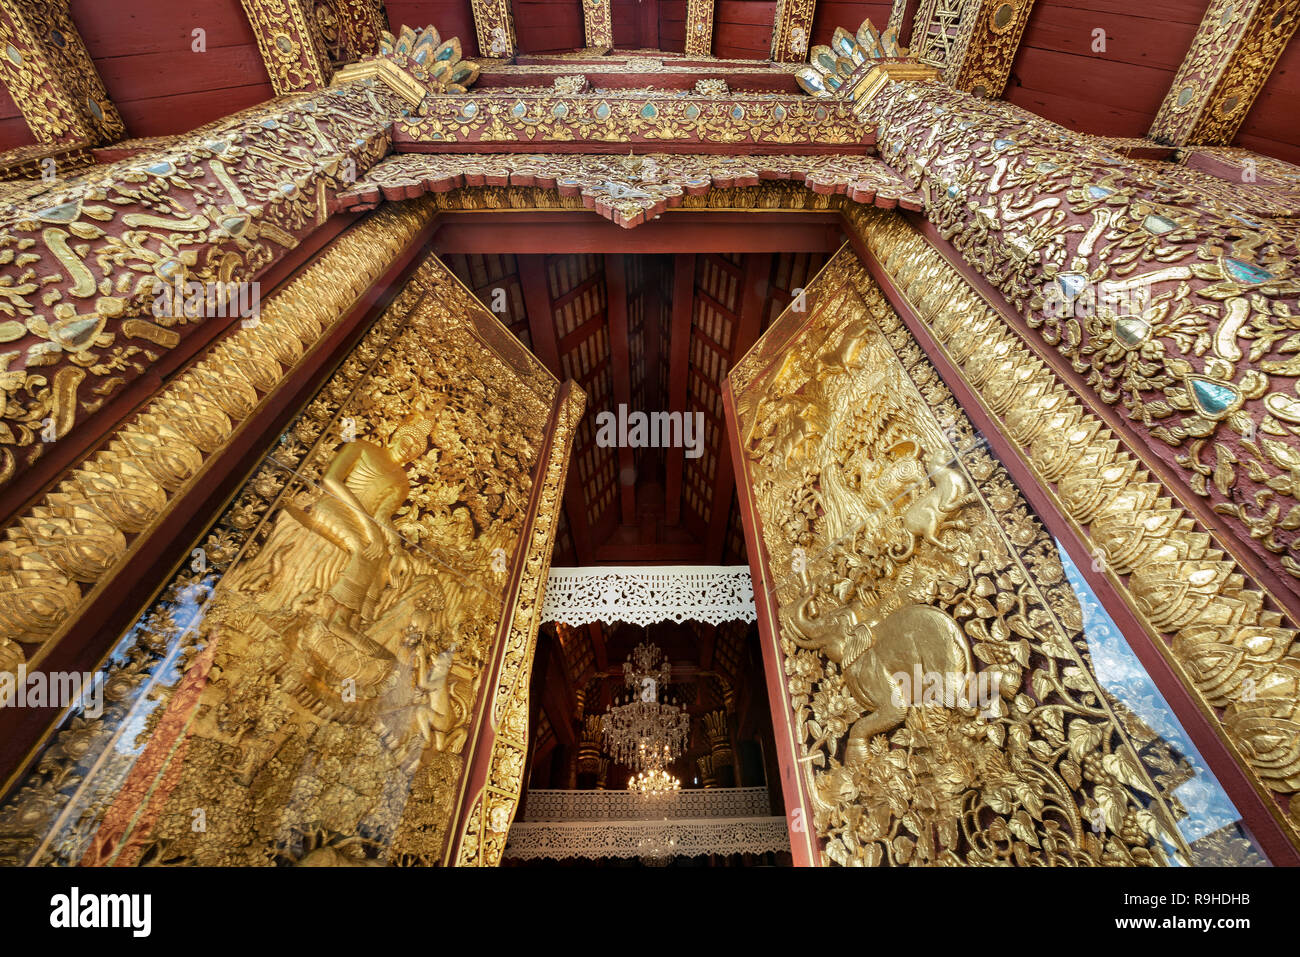 Las grandes puertas de madera tallada de oro en el templo budista, Chiangmai, Tailandia. Foto de stock